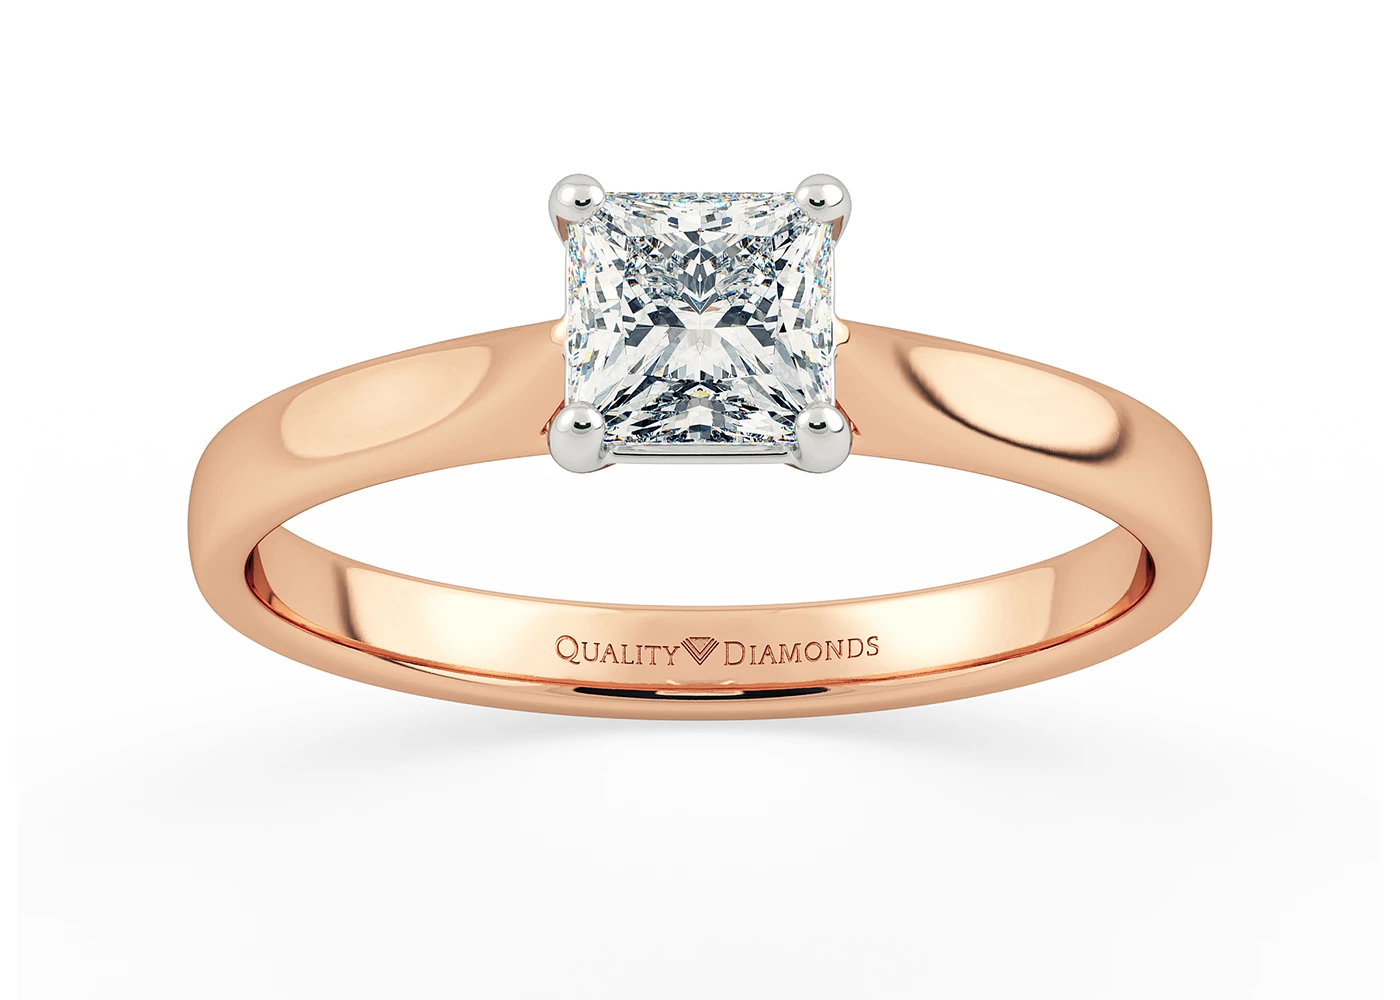 Princess Clara Diamond Ring in 18K Rose Gold